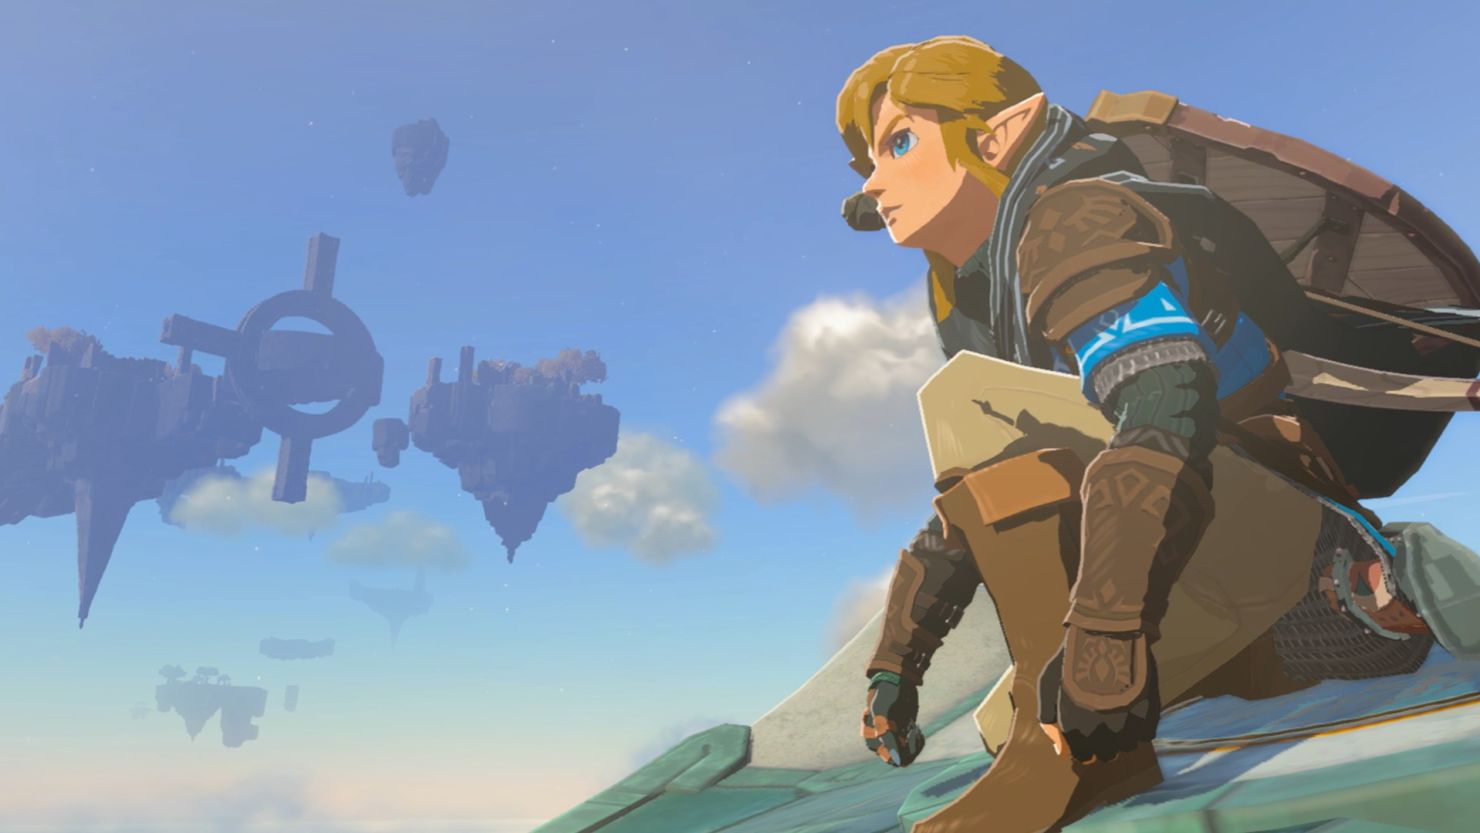 Legend of Zelda Breath of the Wild Map Nintendo Room Decor 